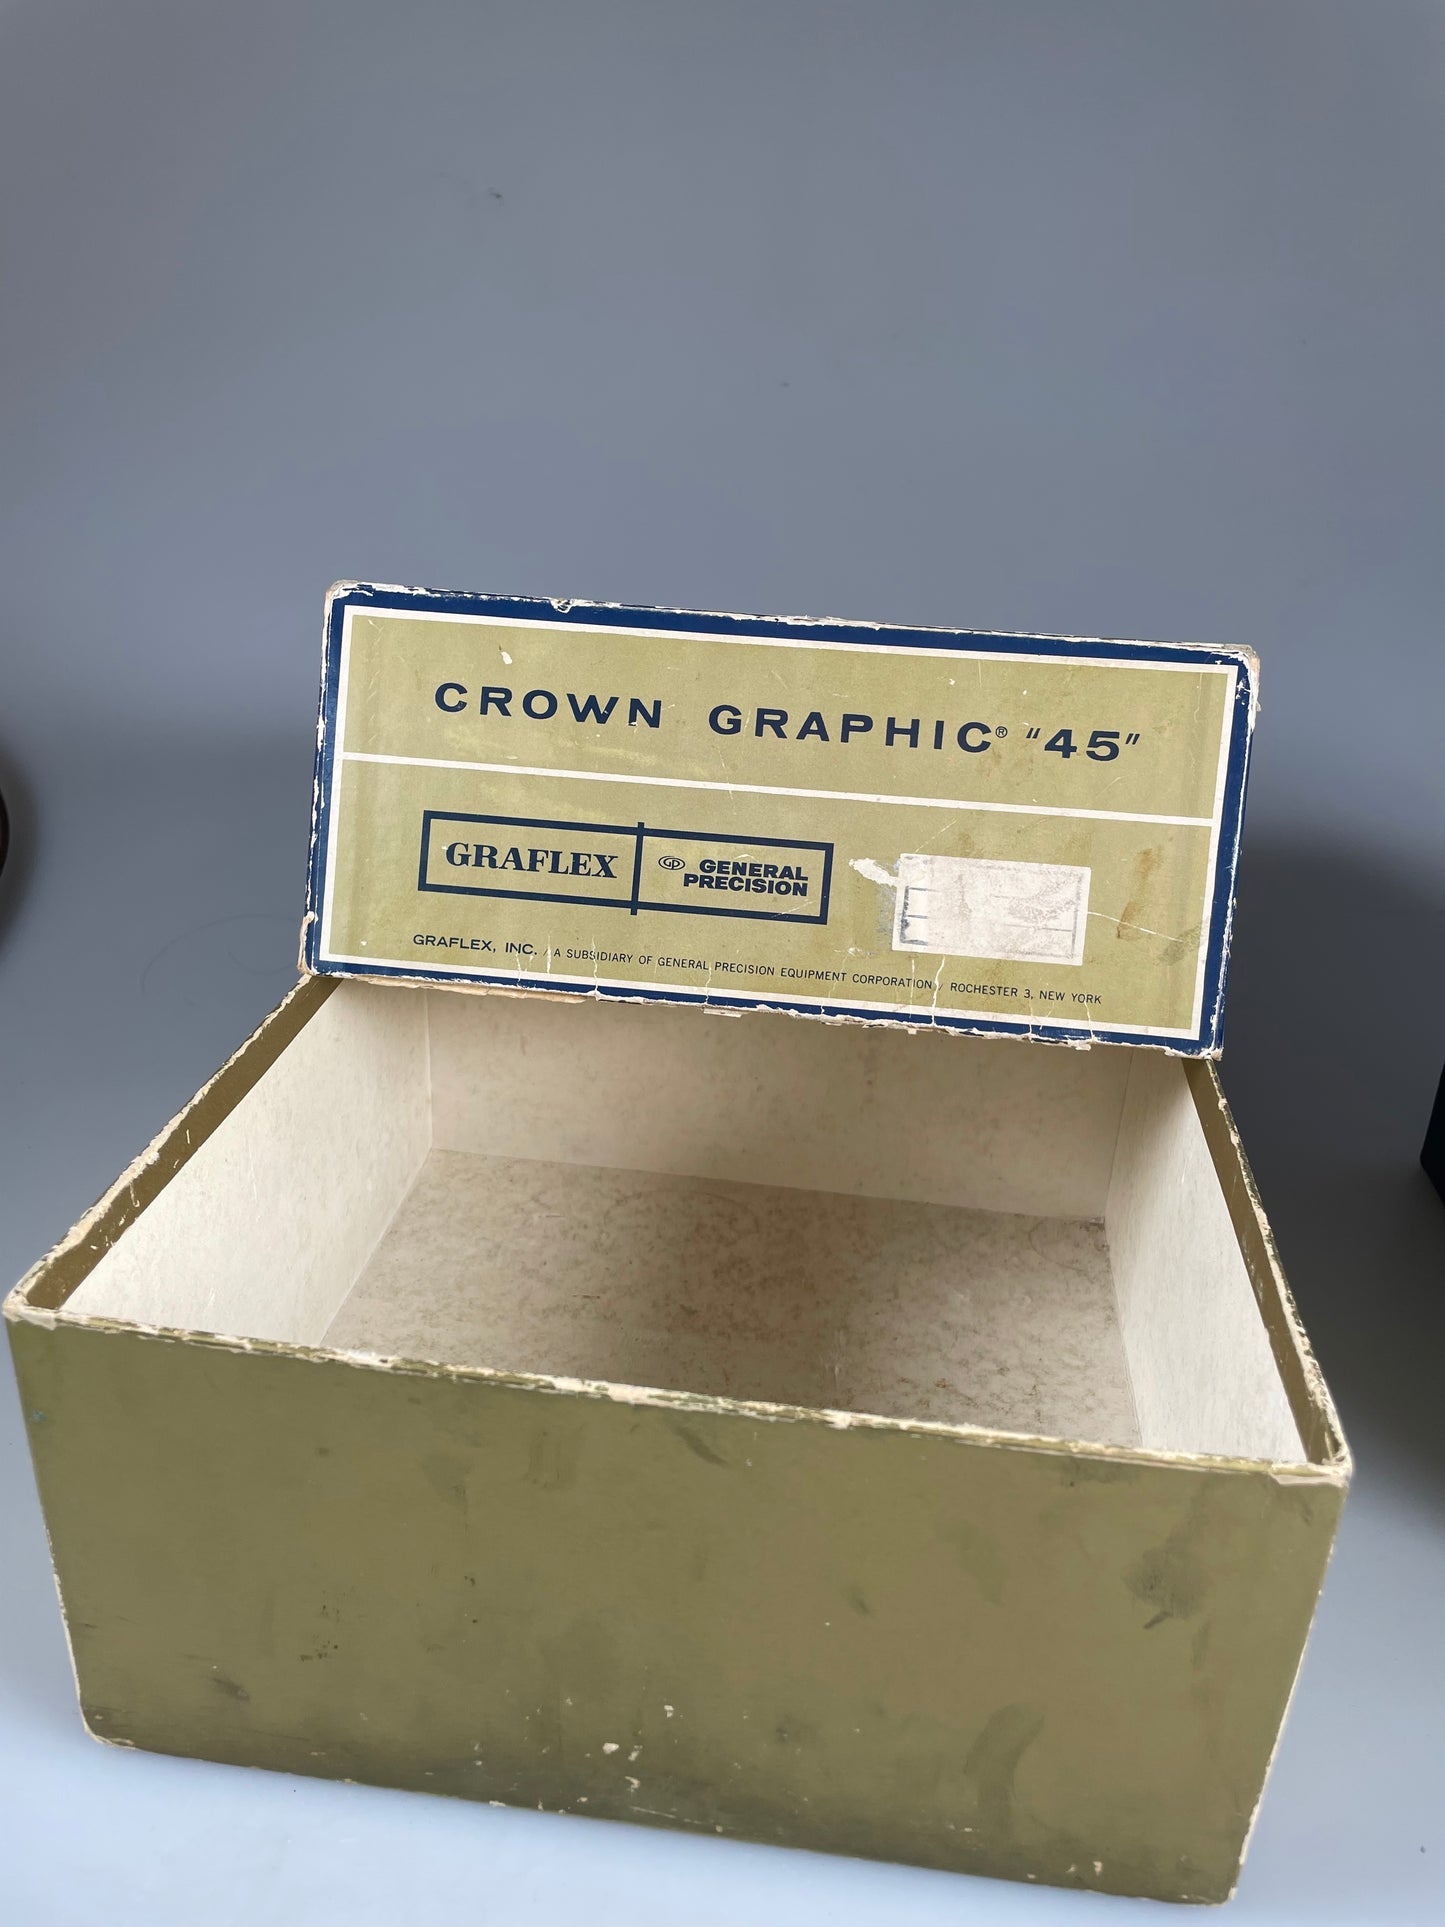 Graflex - Crown Graphic 45 - Original 4x5 * EMPTY BOX ONLY * Genuine Vintage